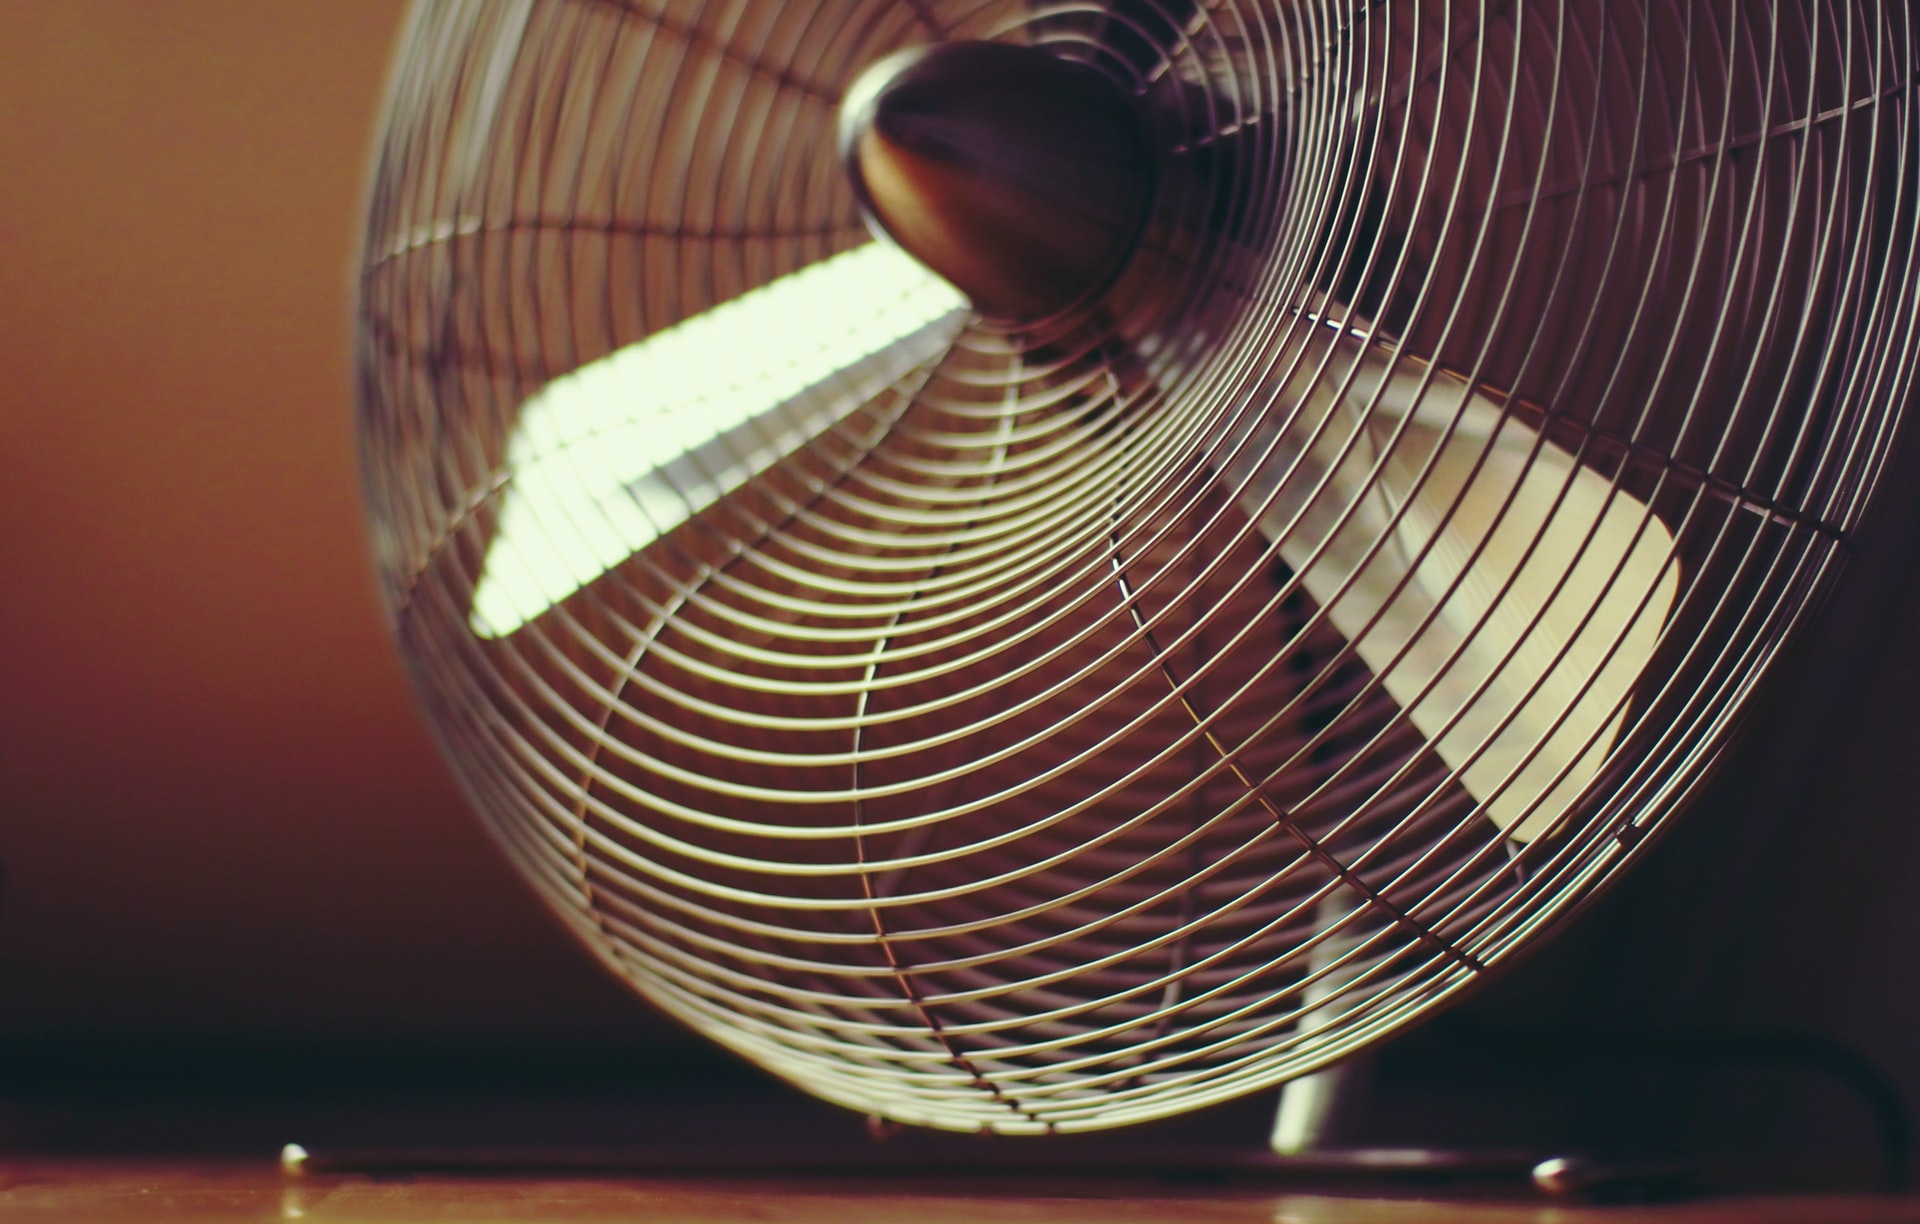 Closeup image of an electric fan